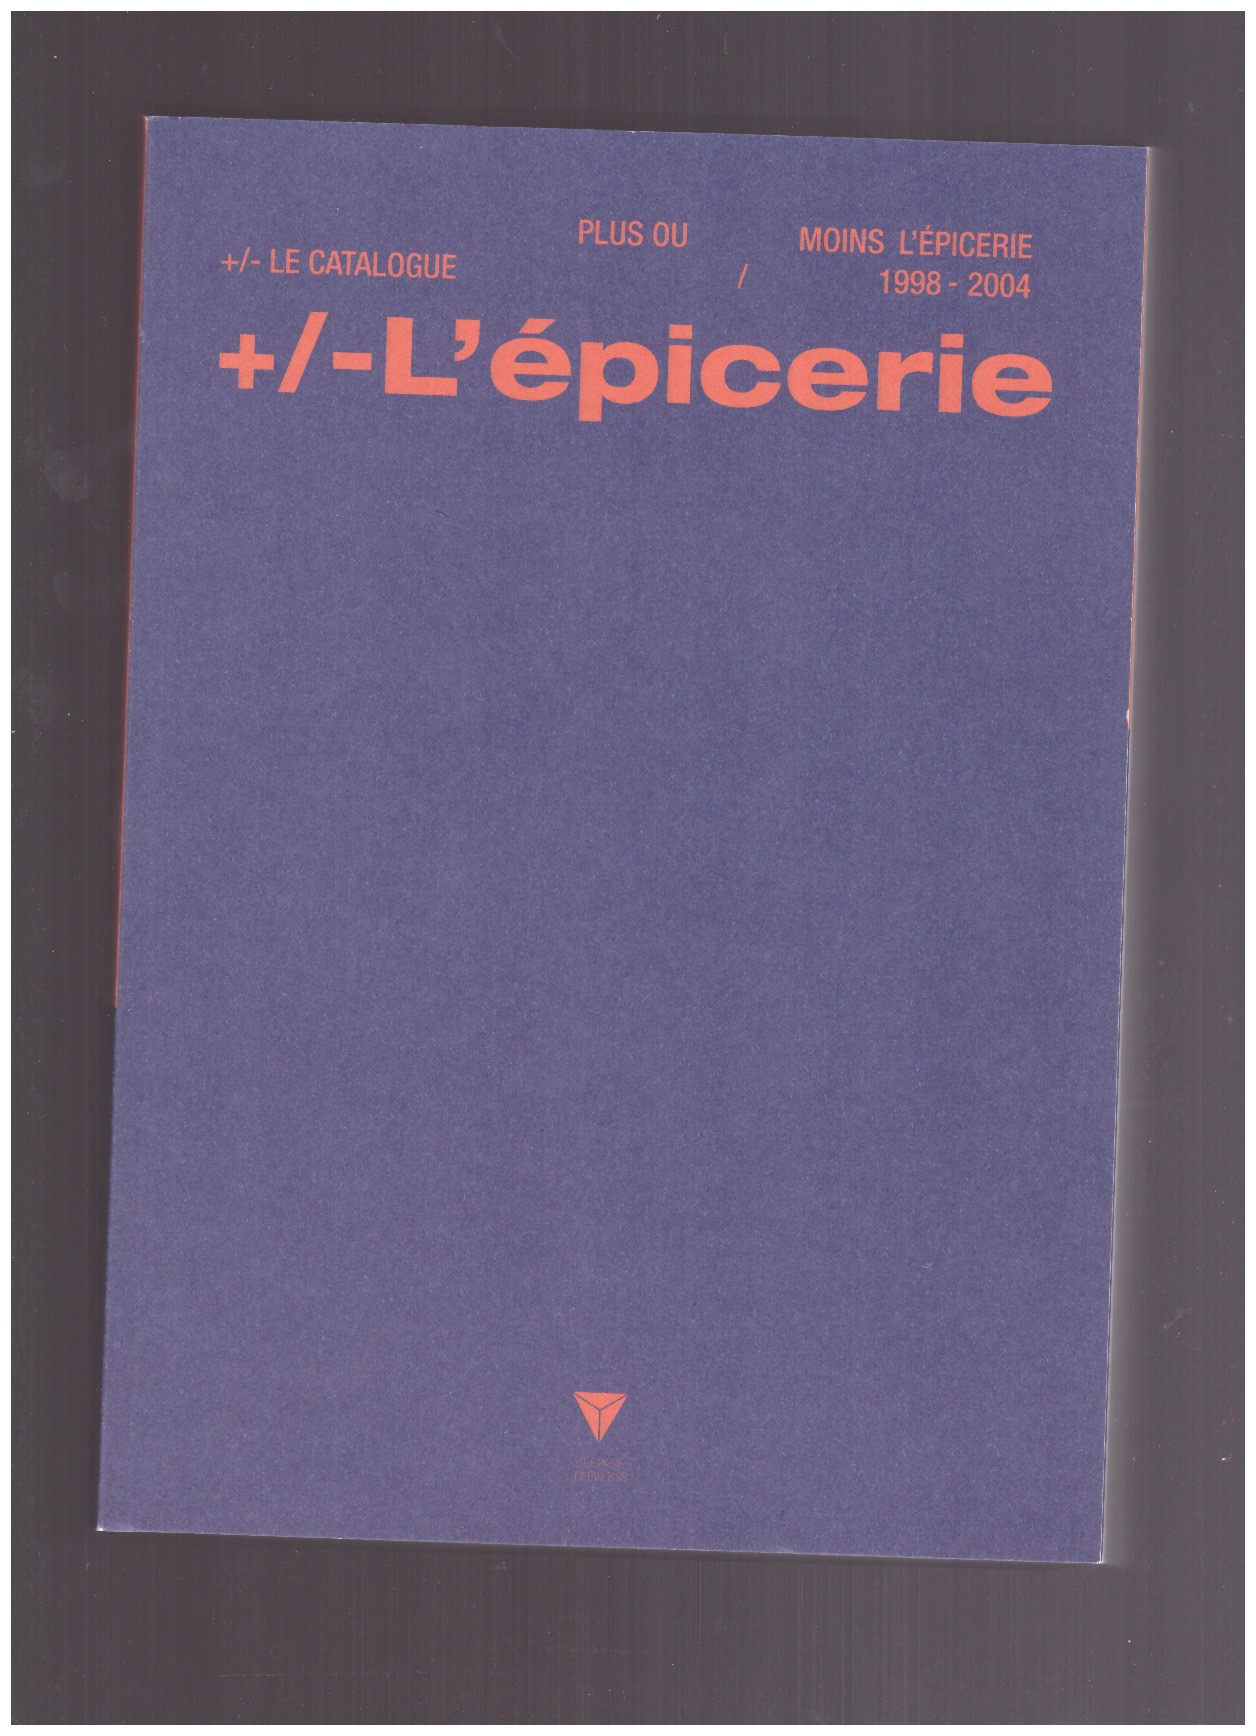 BROC, Stéphane; CHAPUIS, Jean-Louis (ed.) - +/-L’épicerie